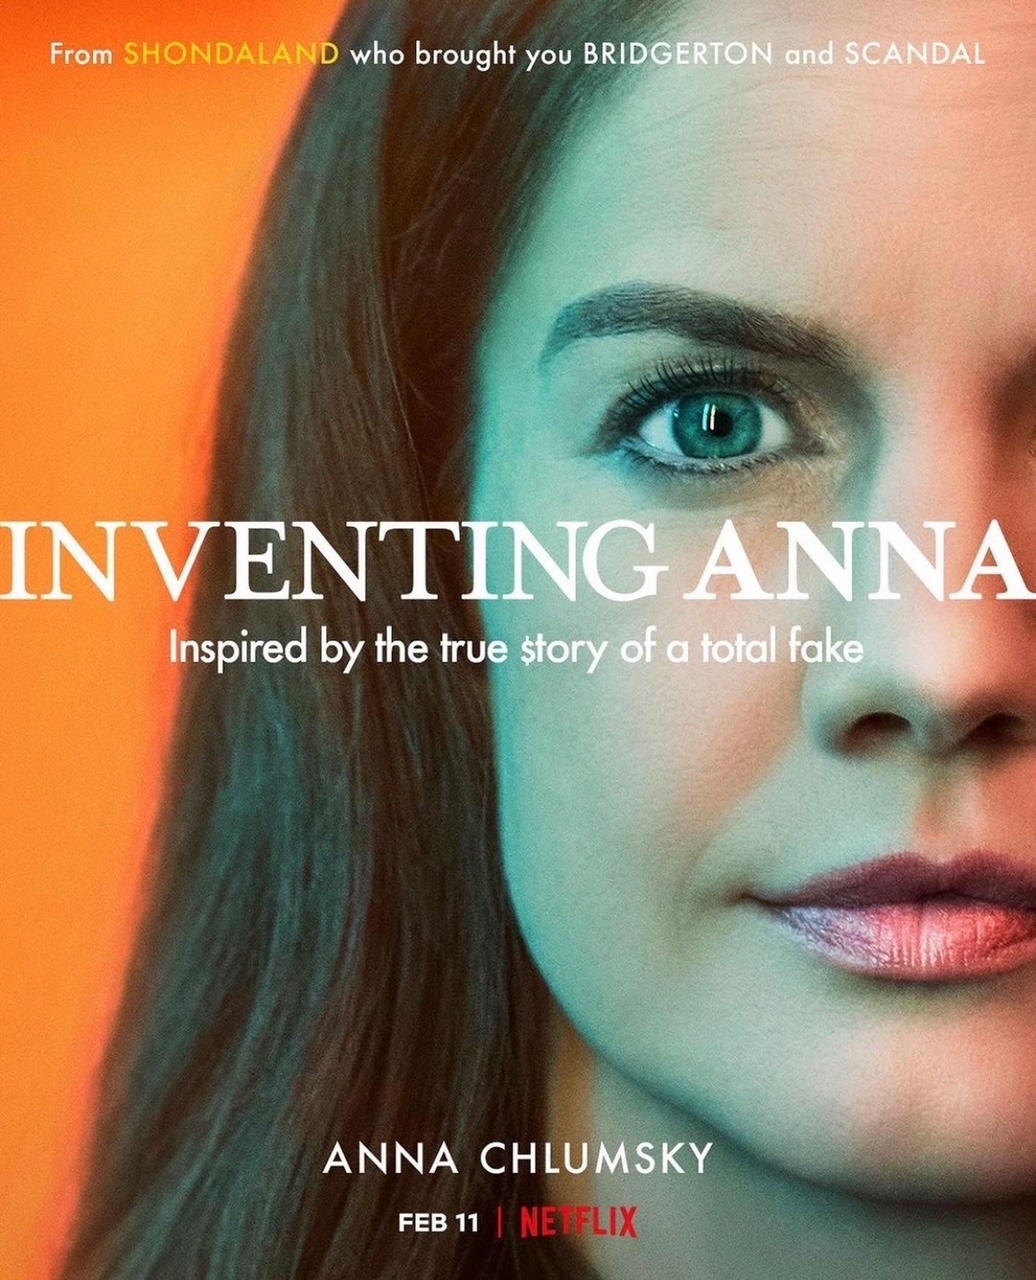 Anna Chlumsky Fakes